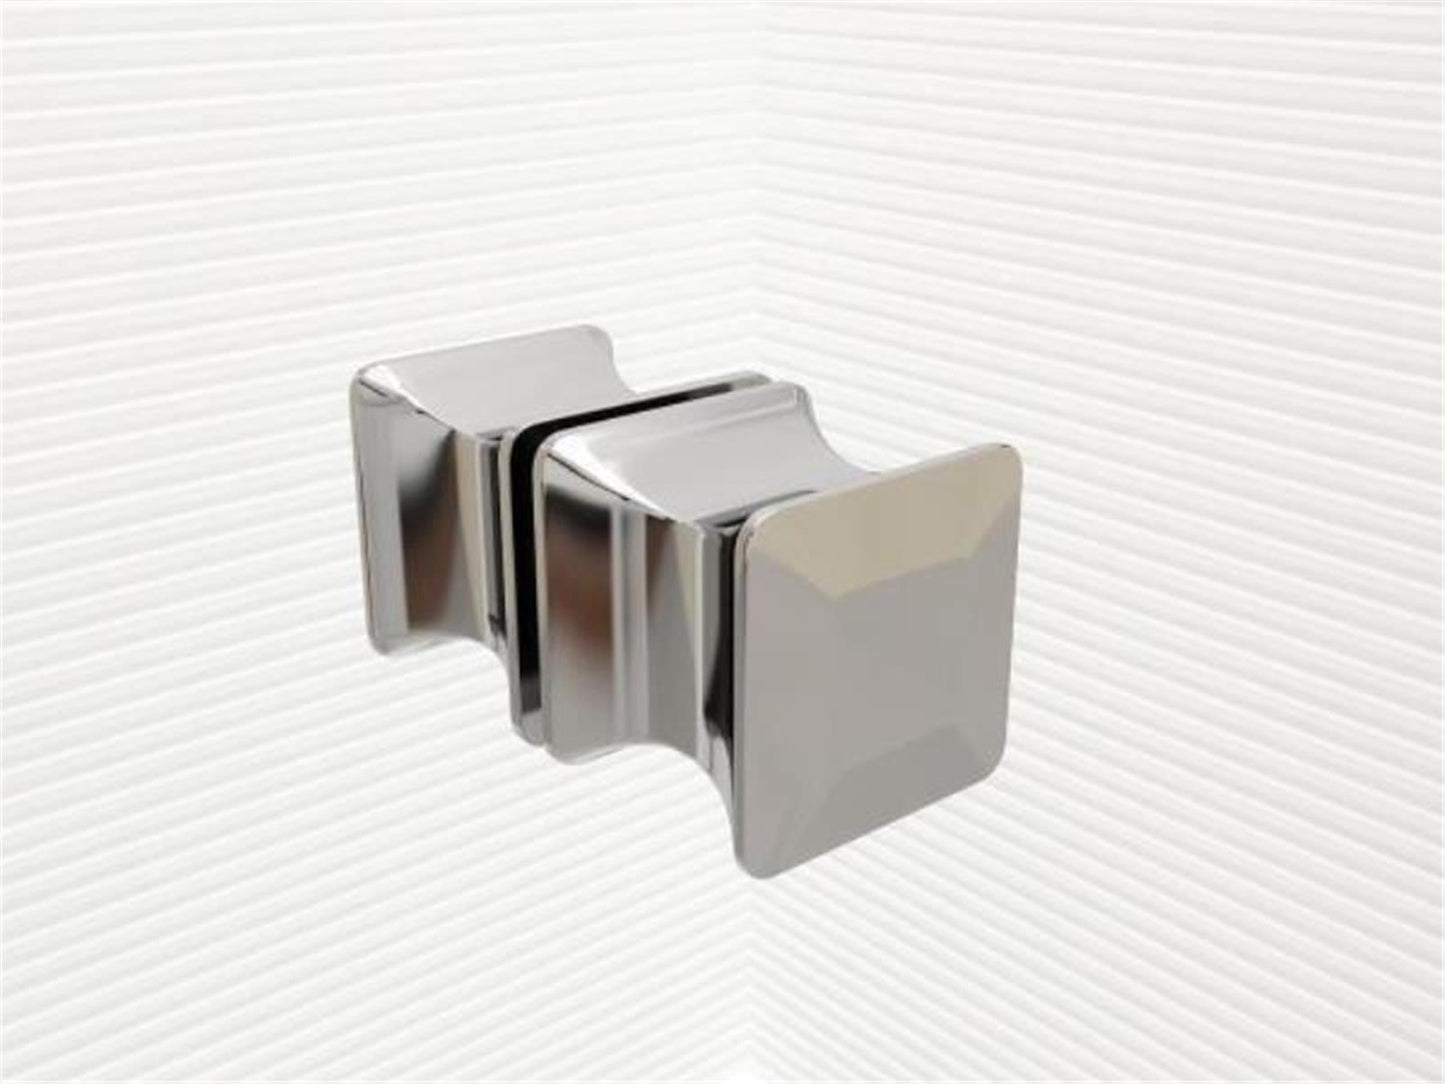 GlasHomeCenter - U-Duschkabine "Asuka" (90x90x195cm) - 8mm - Eckduschkabine - Duschabtrennung - ohne Duschtasse